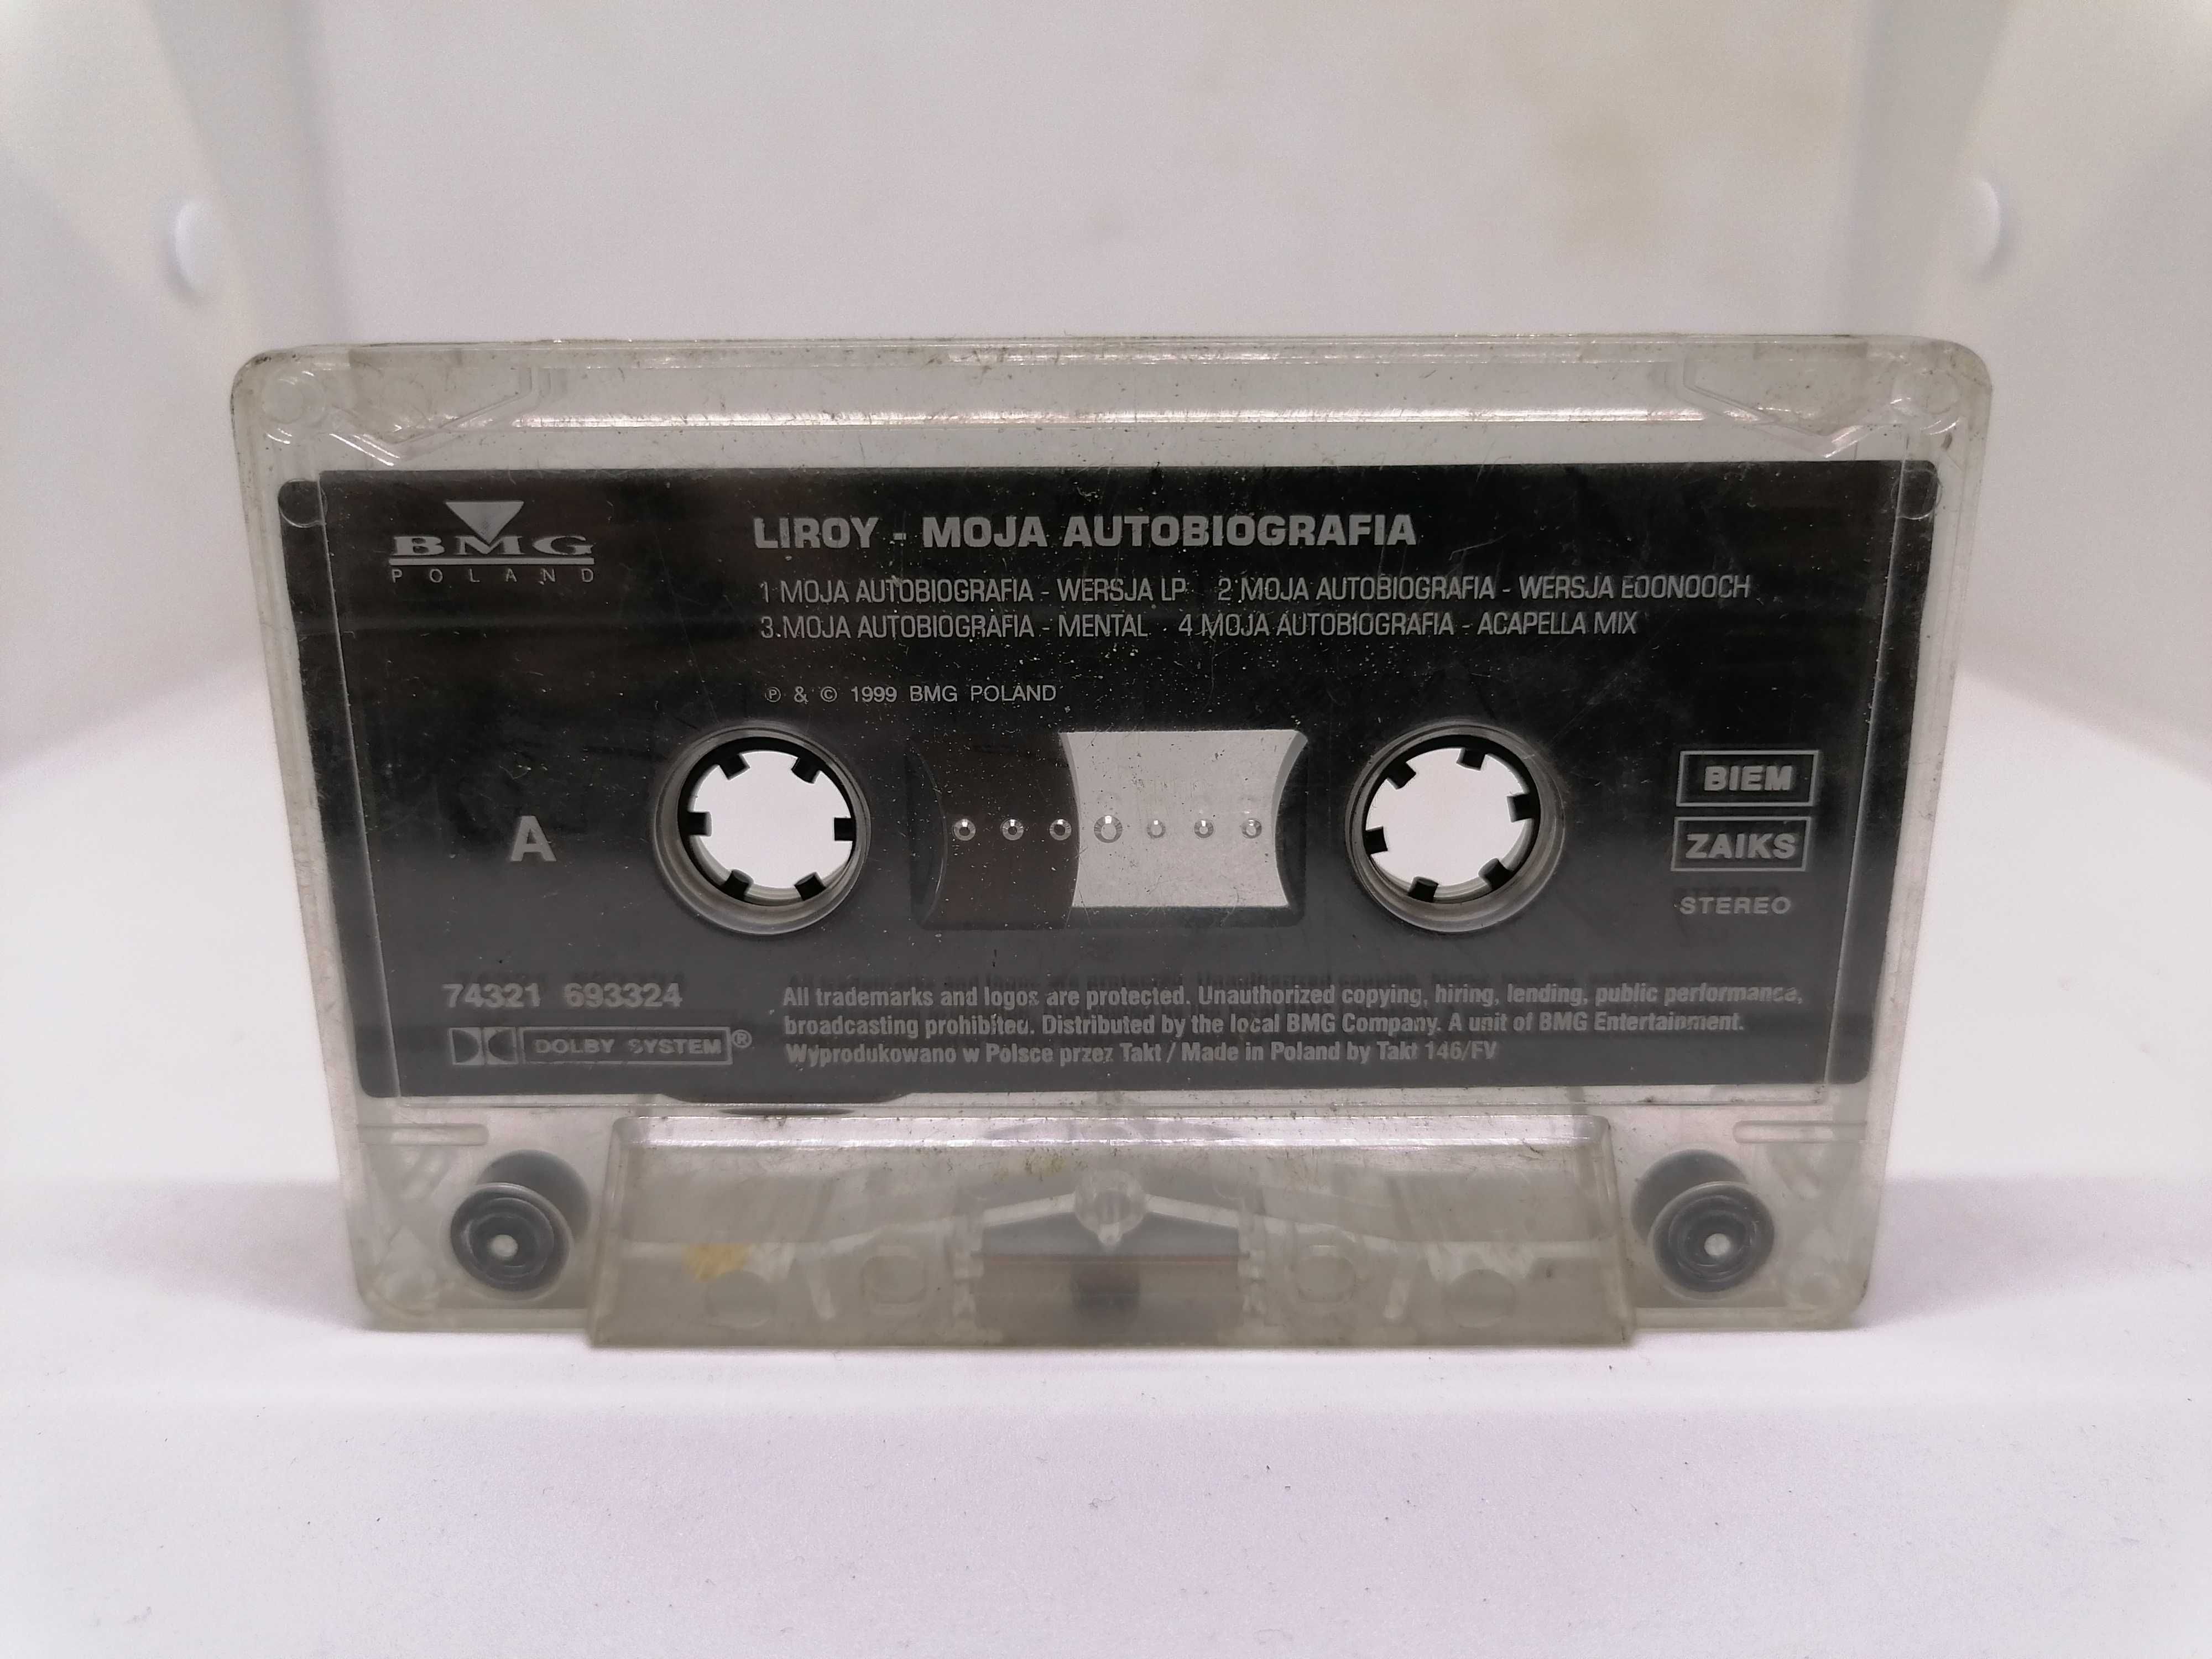 Liroy - Moja Autobiografia - kaseta magnetofonowa